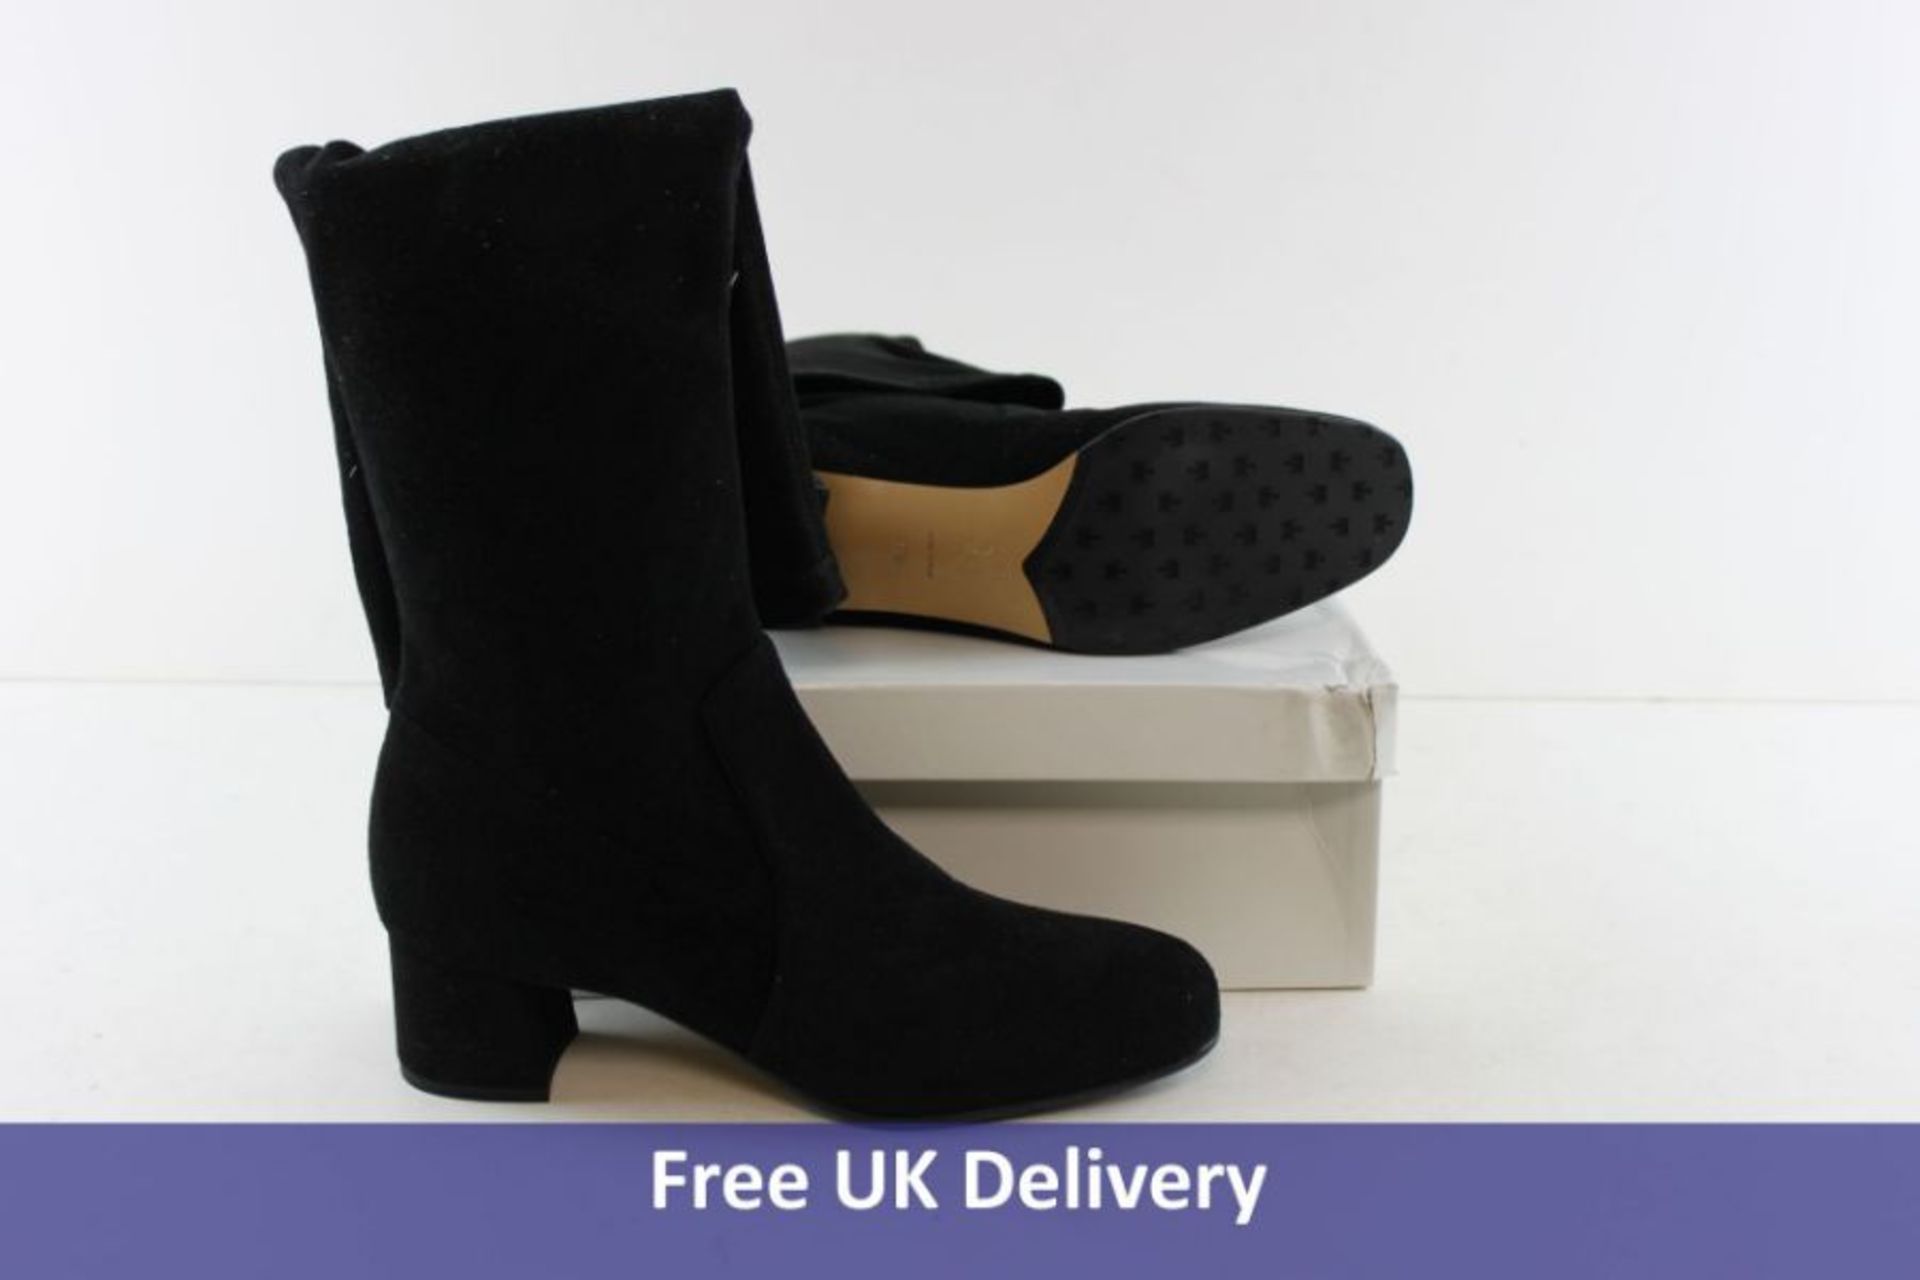 Voltan Women's Knee High Boots, Black, UK 6.5